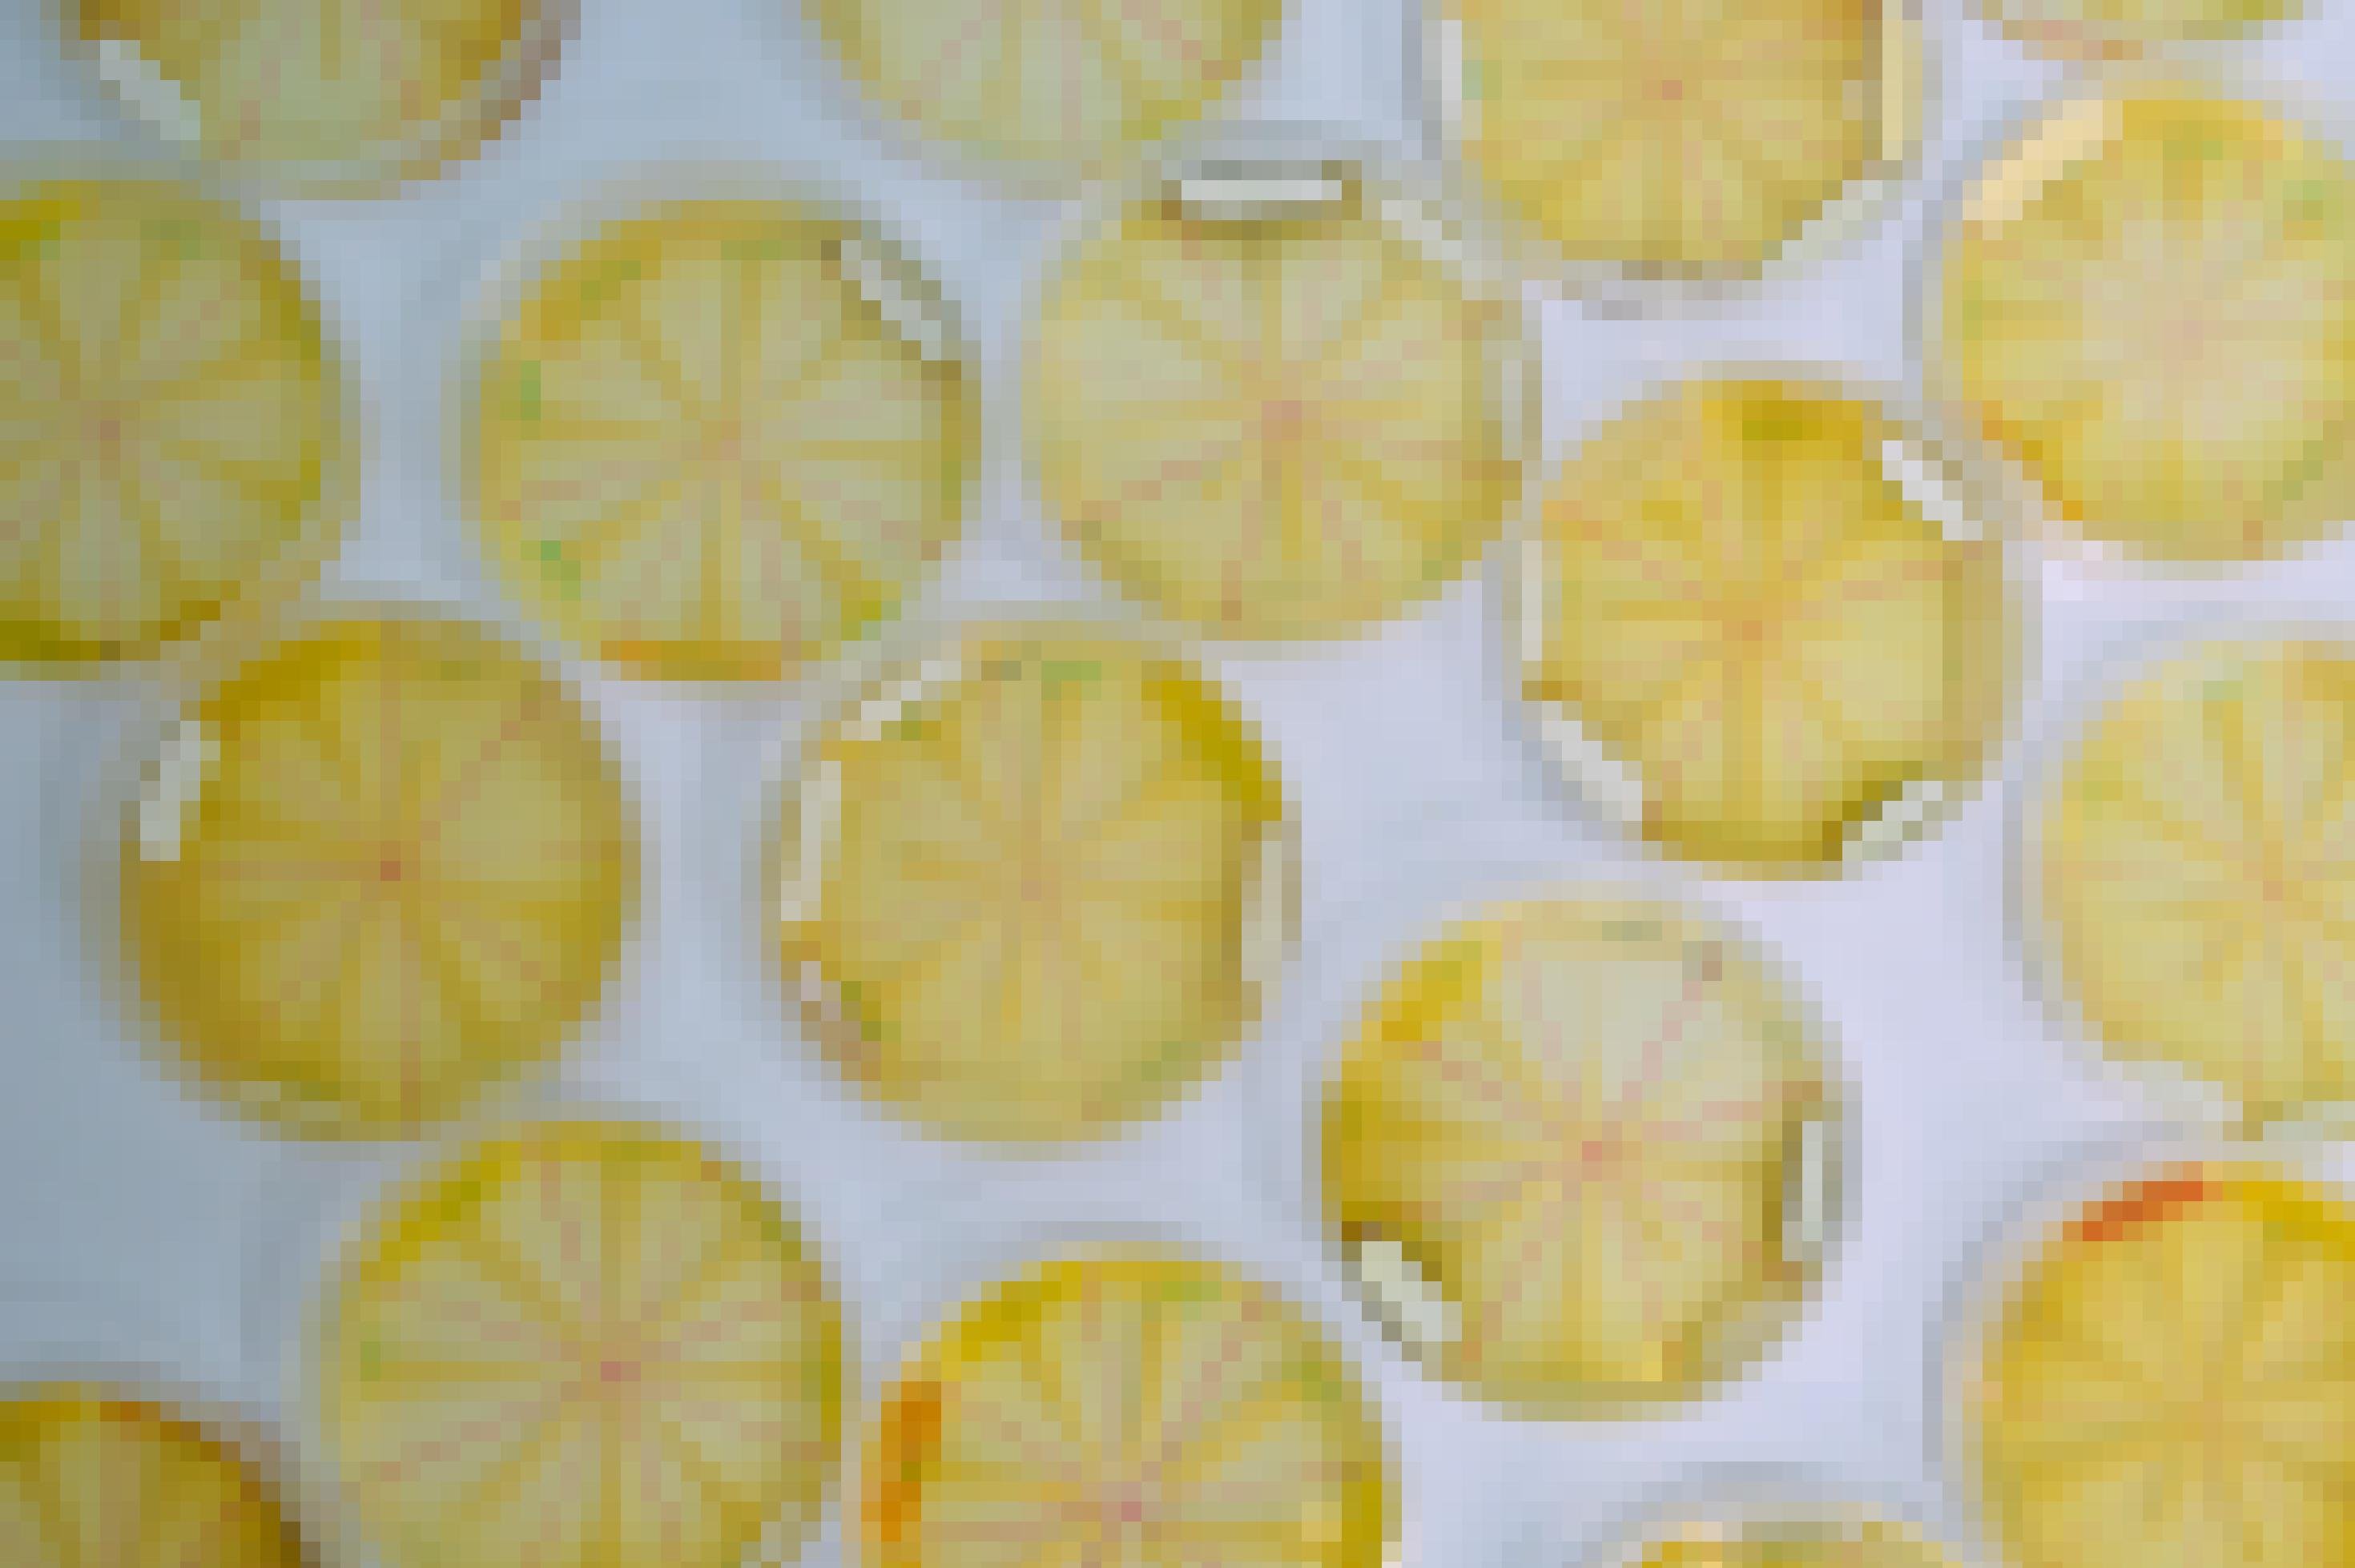 Viele gelbe Petrischalen auf einem Tisch.